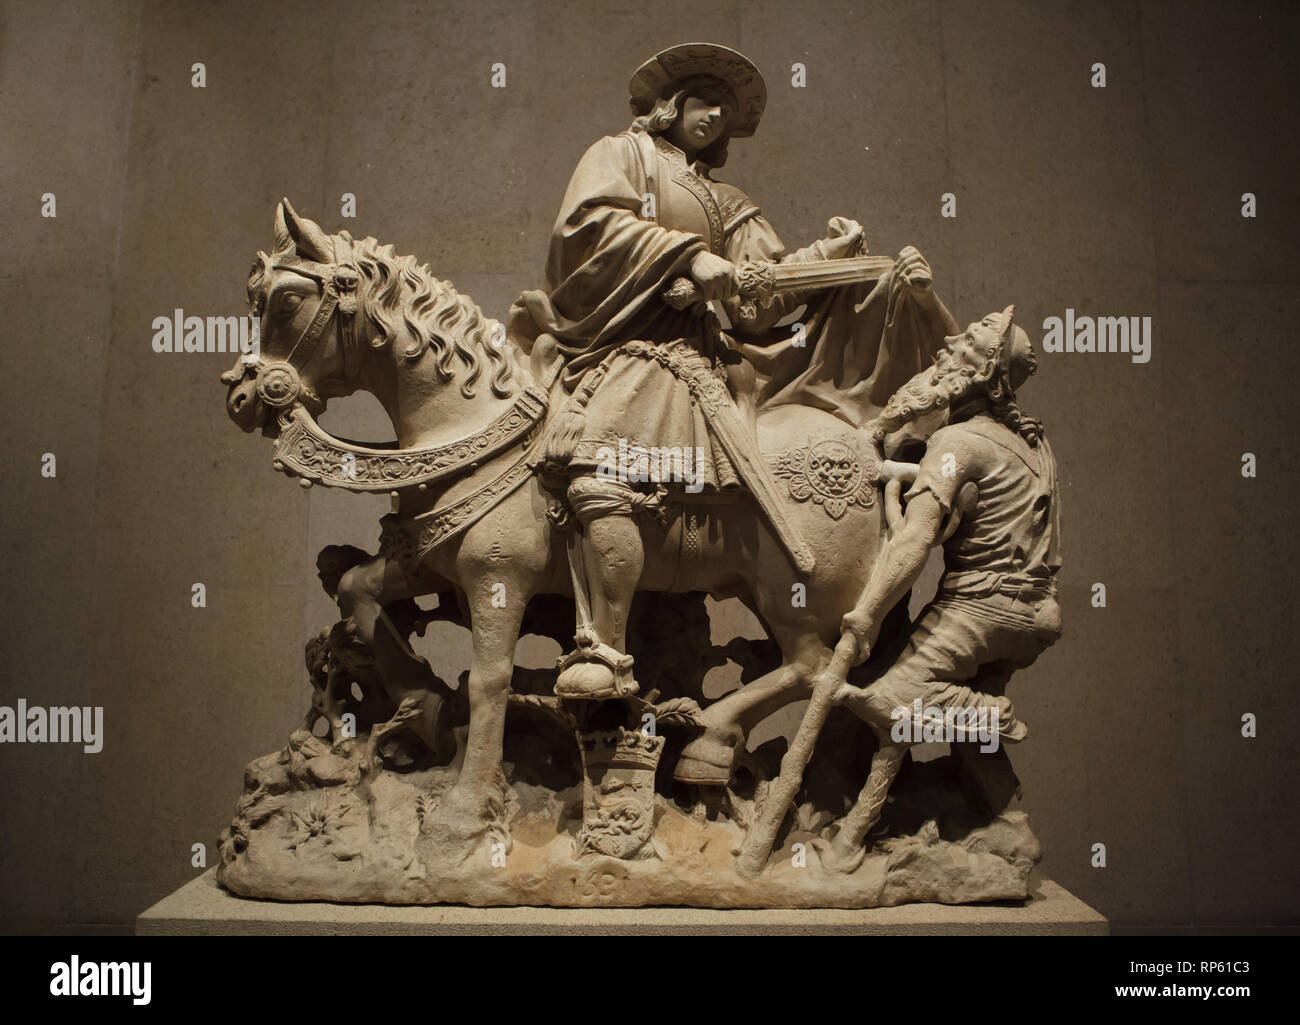 Saint martin partageant son manteau avec un mendiant représenté dans la statue de calcaire par un artiste inconnu de la vallée de la Loire daté de 1531 sur l'affichage dans le Musée Calouste Gulbenkian (Museu Calouste Gulbenkian) à Lisbonne, Portugal. Banque D'Images